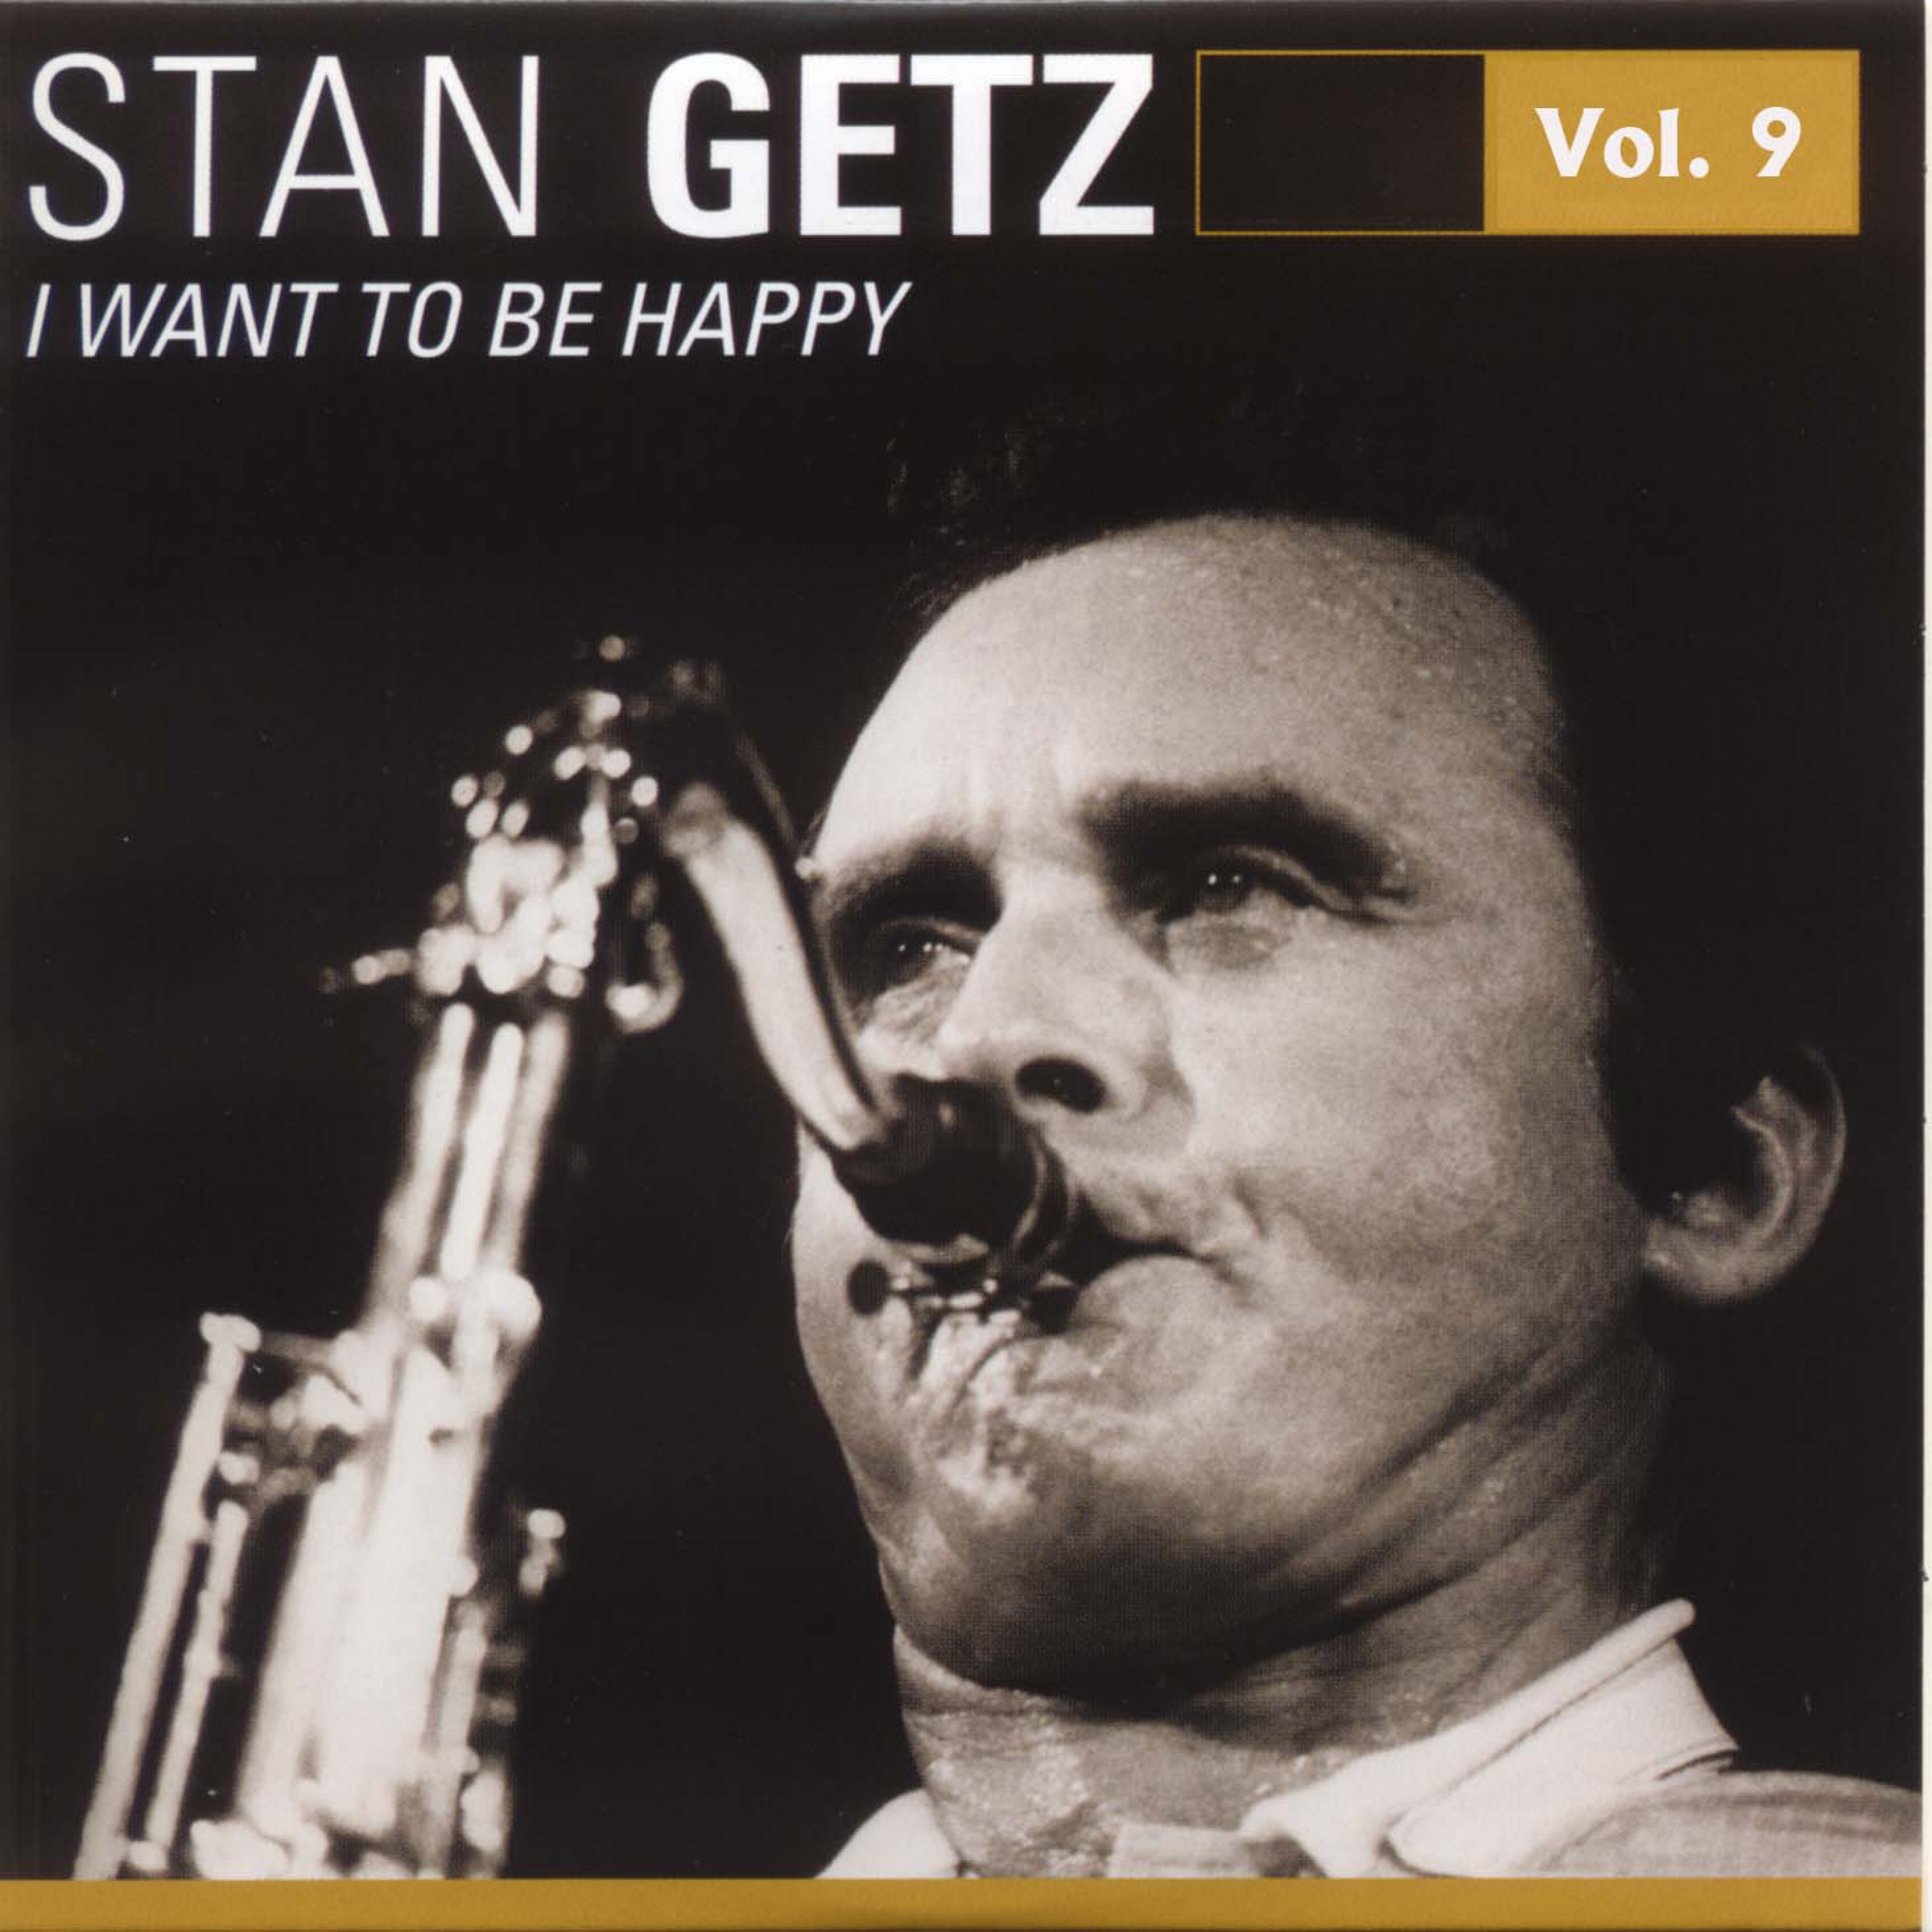 Stan Getz Vol. 9